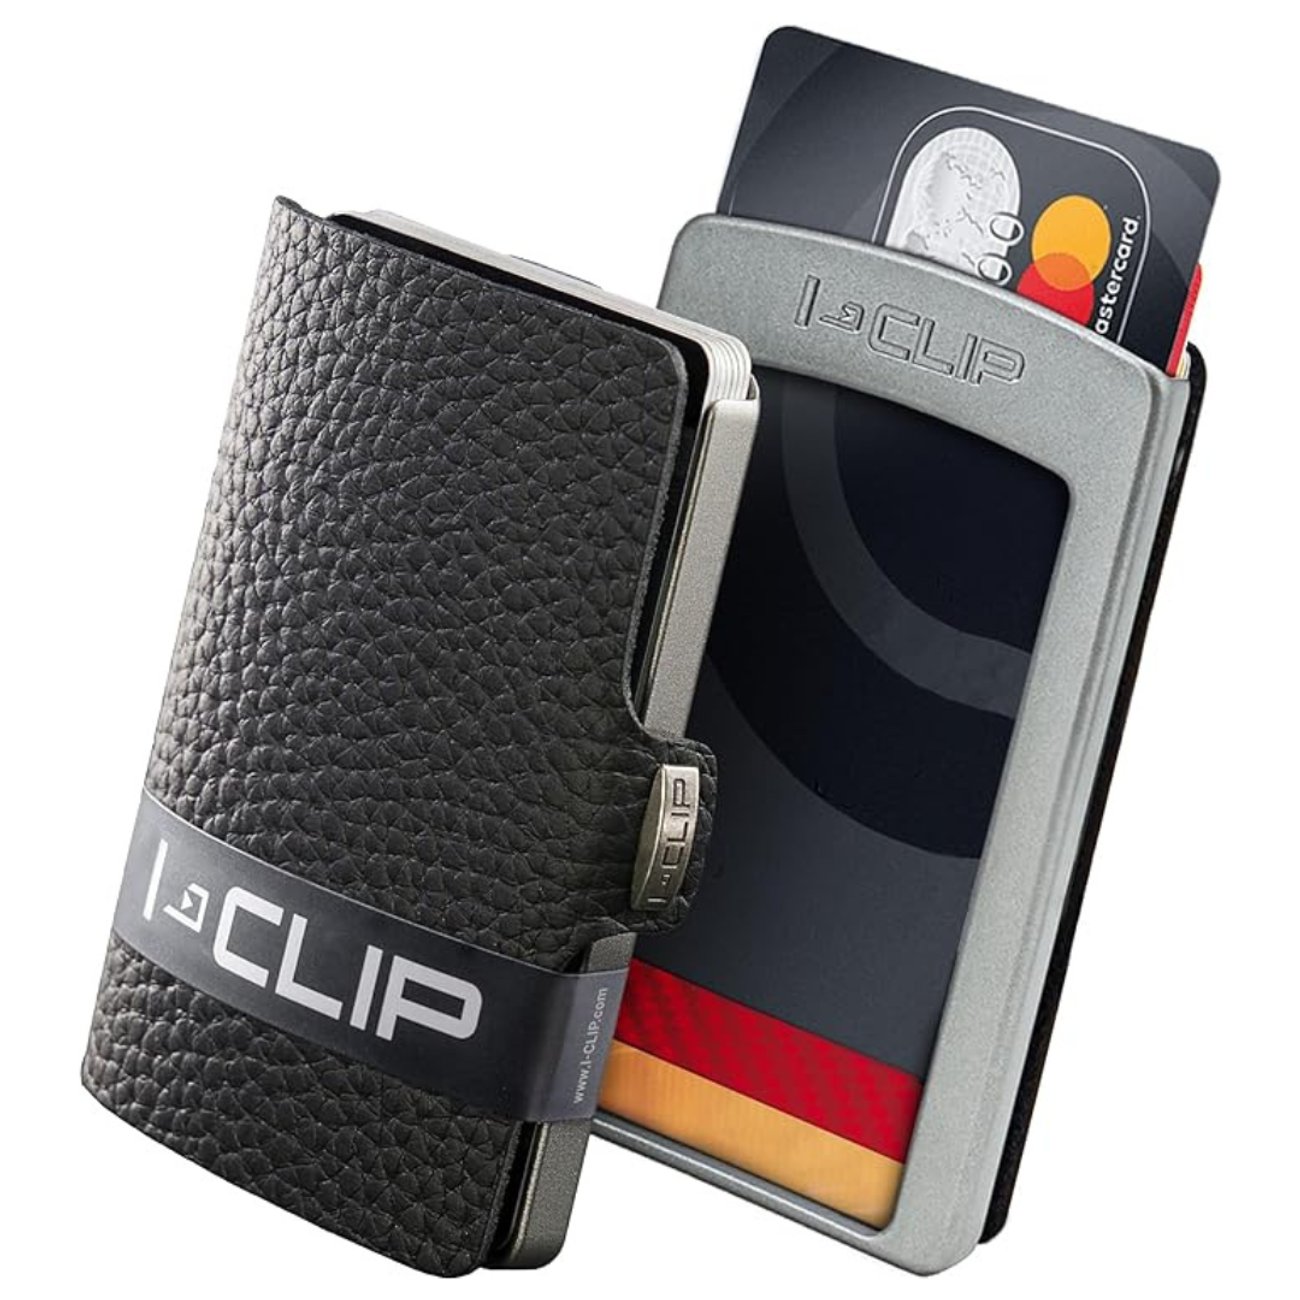 I-CLIP – Mini Wallet mit Geldklammer